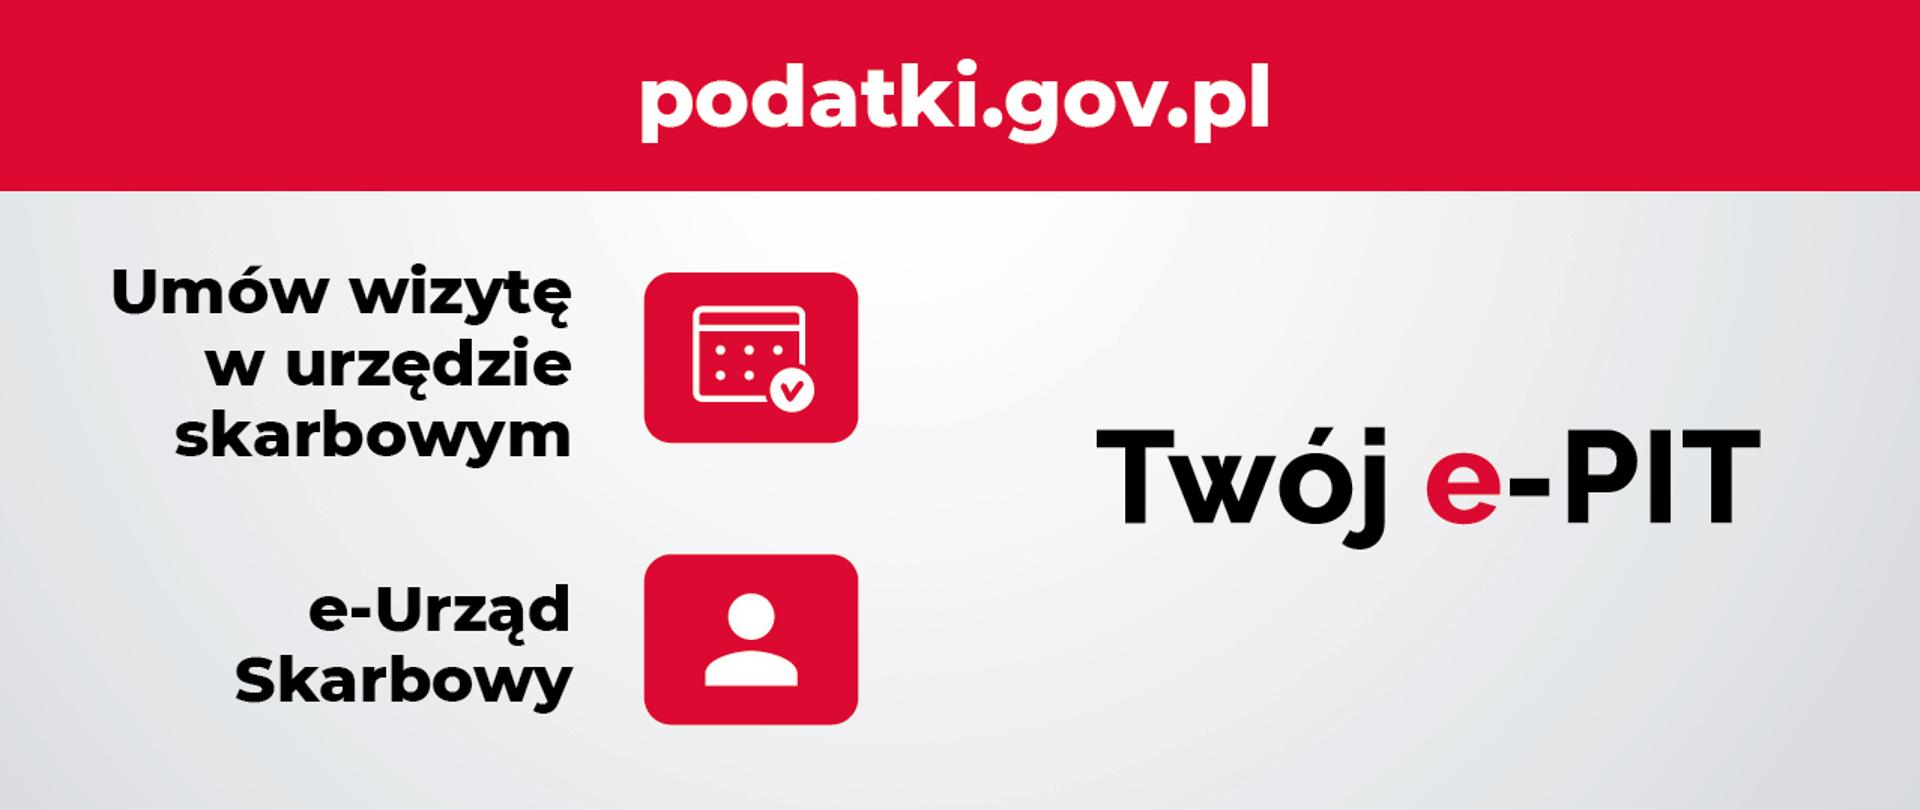 Grafika z symbolem kalendarza i osoby, adresem strony podatki.gov.pl, napisem Umów wizytę w urzędzie skarbowym.